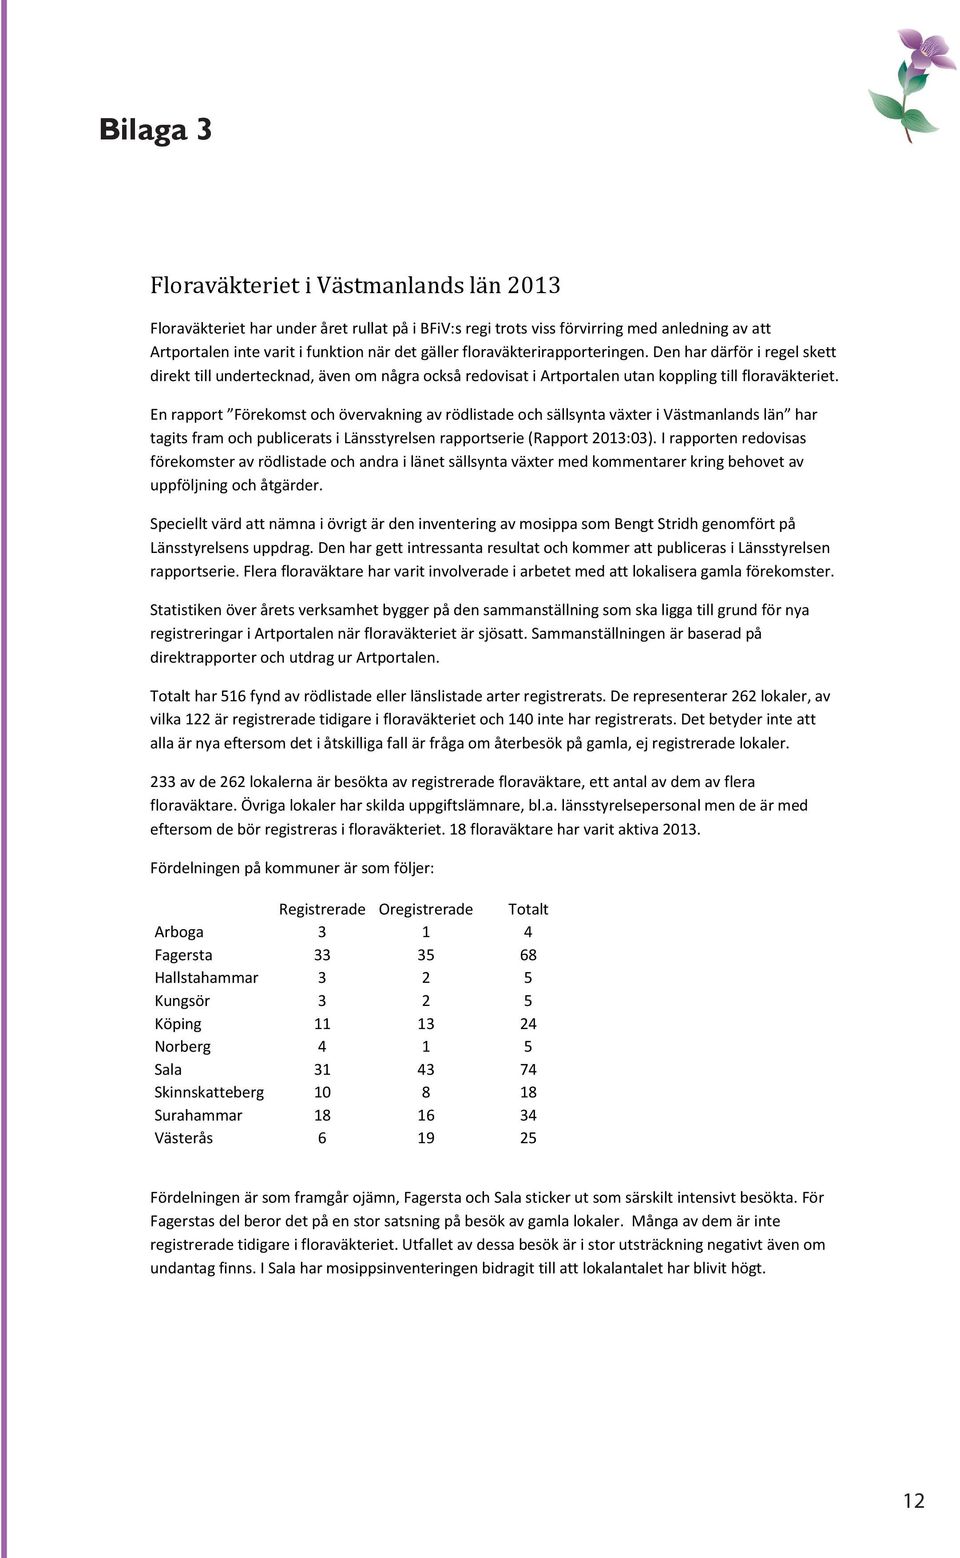 En rapport Förekomst och övervakning av rödlistade och sällsynta växter i Västmanlands län har tagits fram och publicerats i Länsstyrelsen rapportserie (Rapport 2013:03).